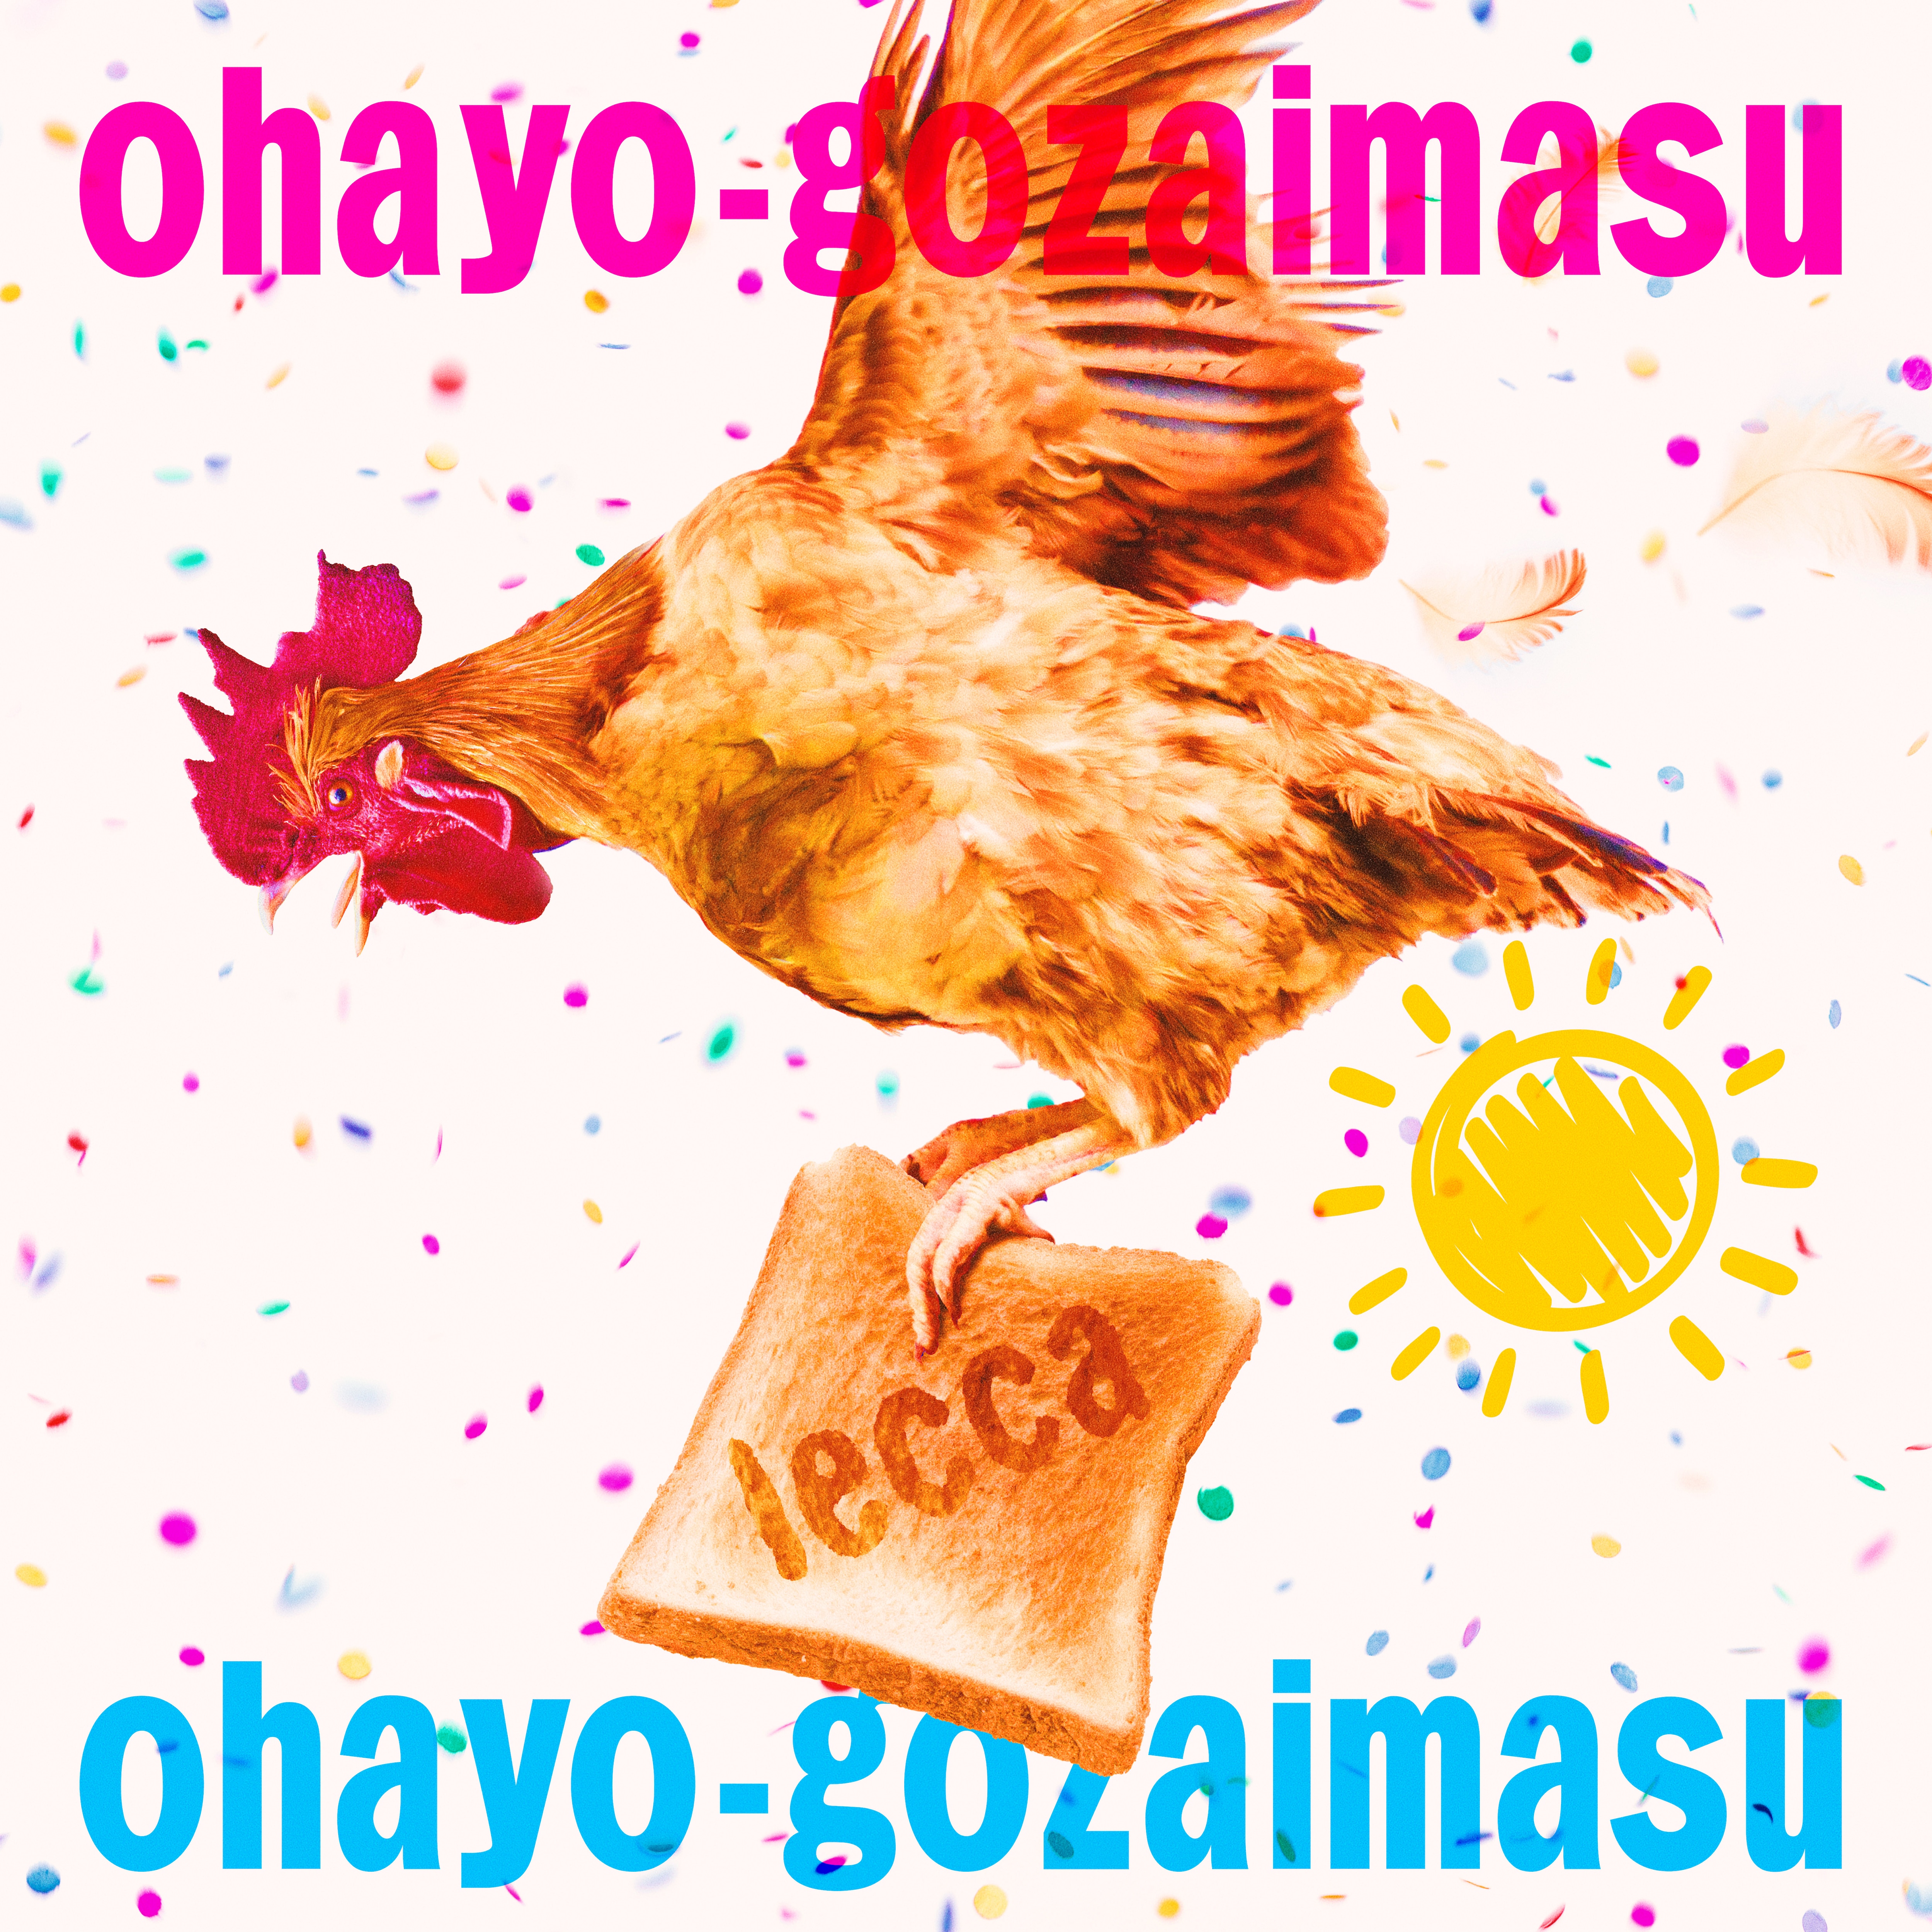 3ヶ月連続配信の第2弾！ 7/12（水）に「ohayo-gozaimasu」配信決定、ジャケット写真も解禁！